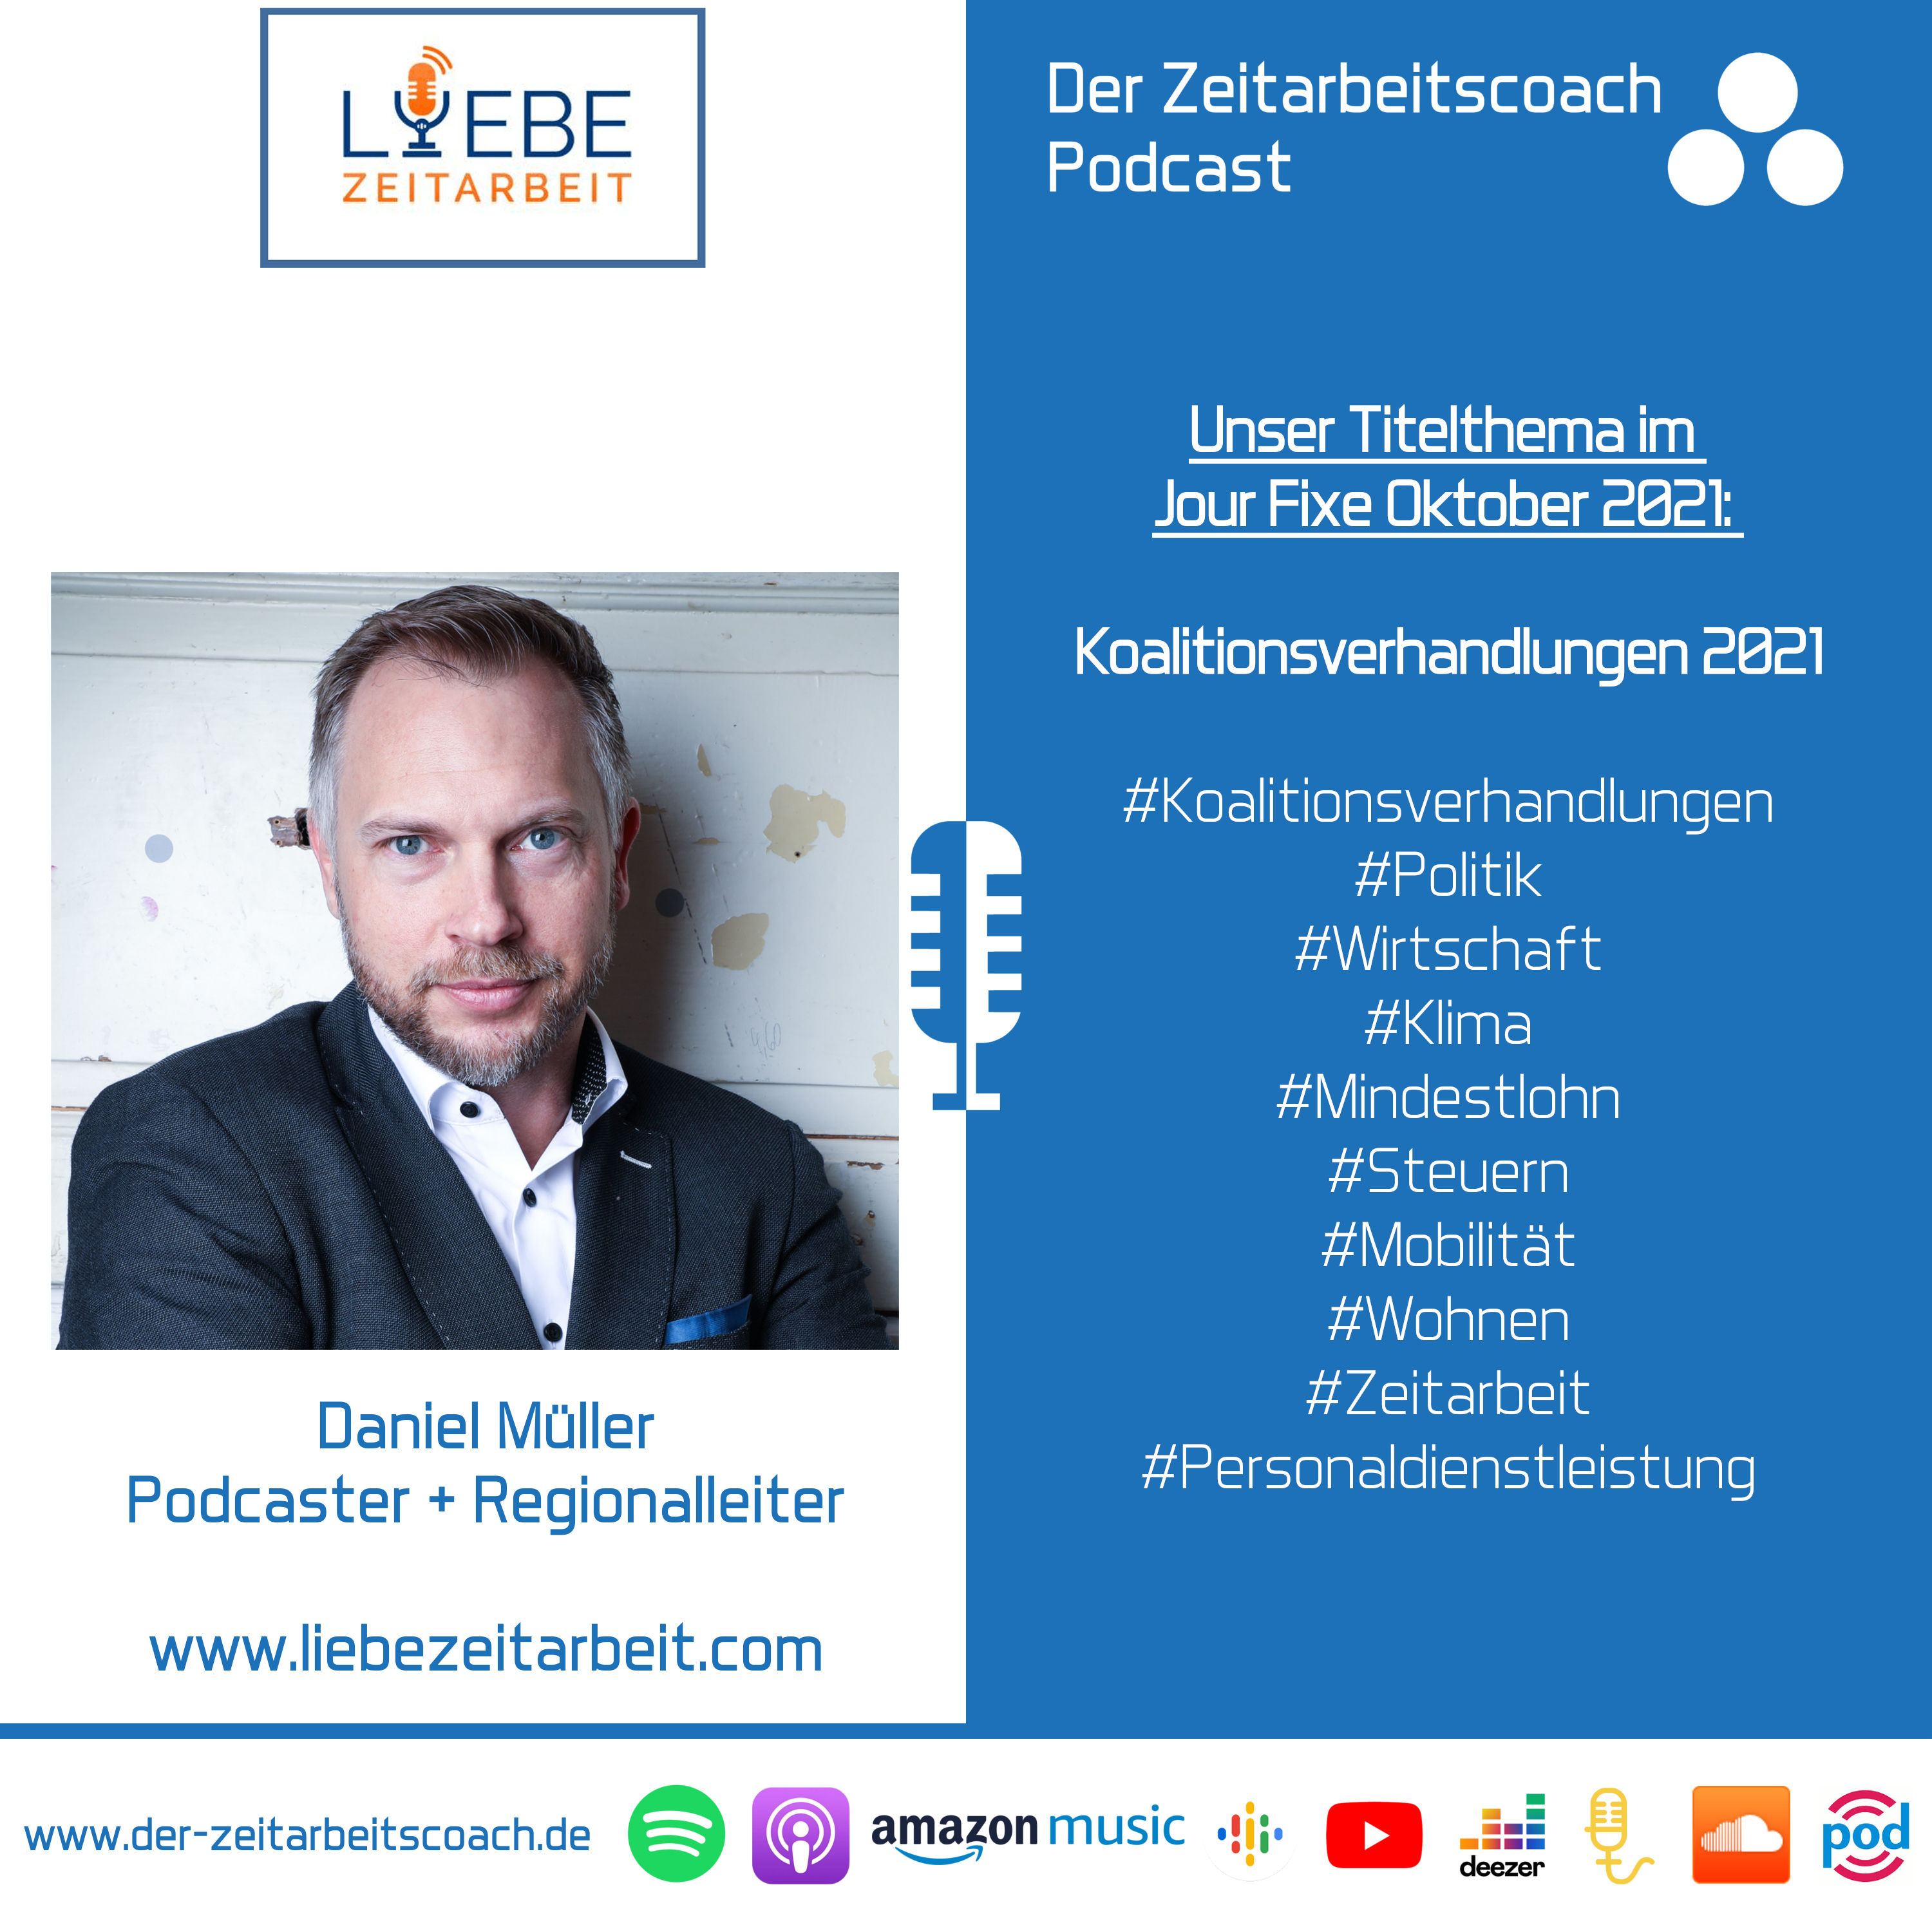 Koalitionsverhandlungen 2021 | Daniel Müller von Liebe Zeitarbeit im Zeitarbeitscoach Podcast